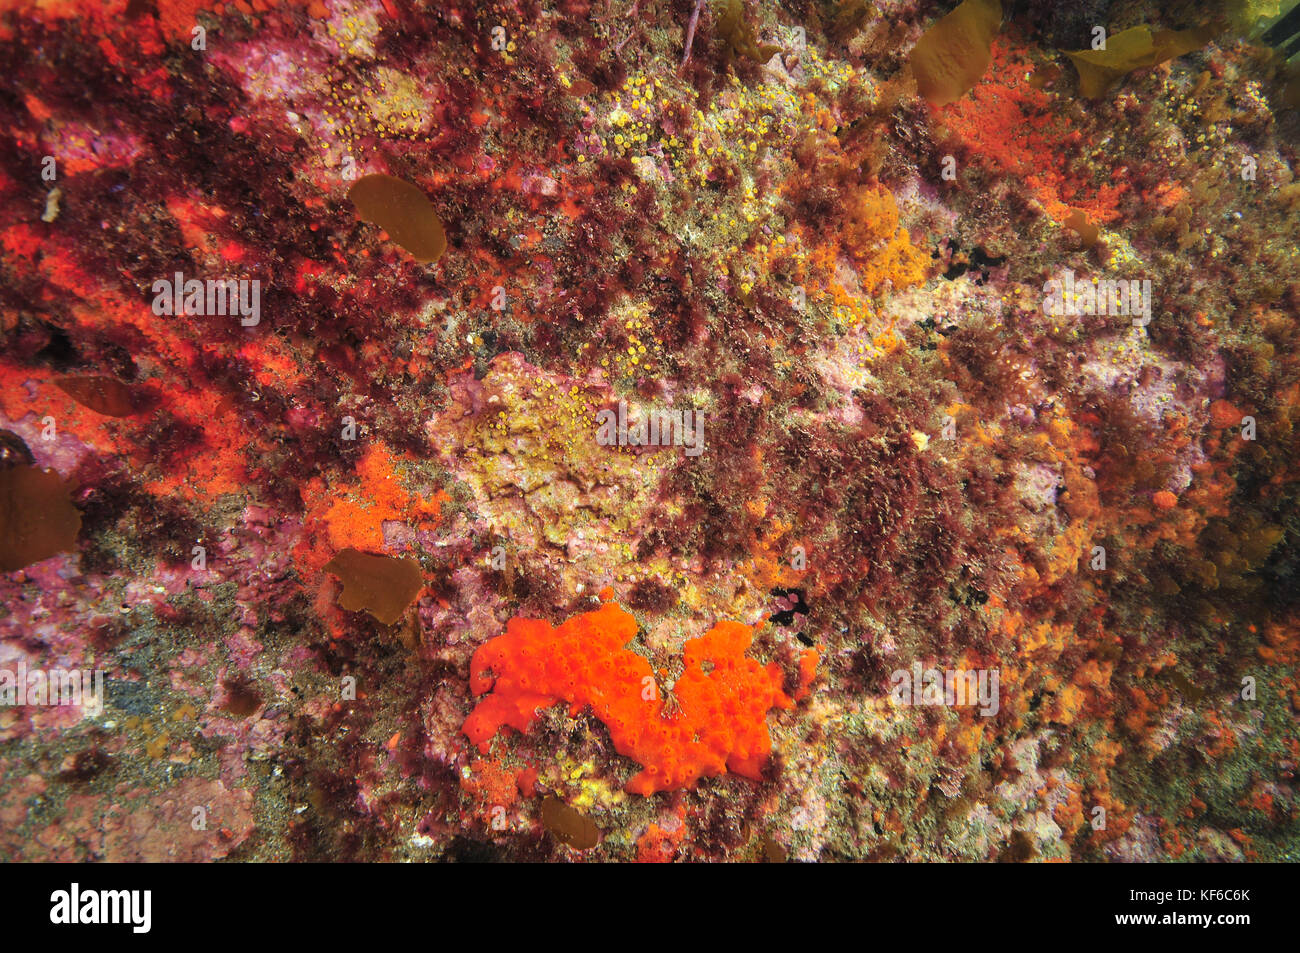 Pared de arrecife rocoso cubierto con coloridos invertebrados y algas incrustantes rosa. Foto de stock